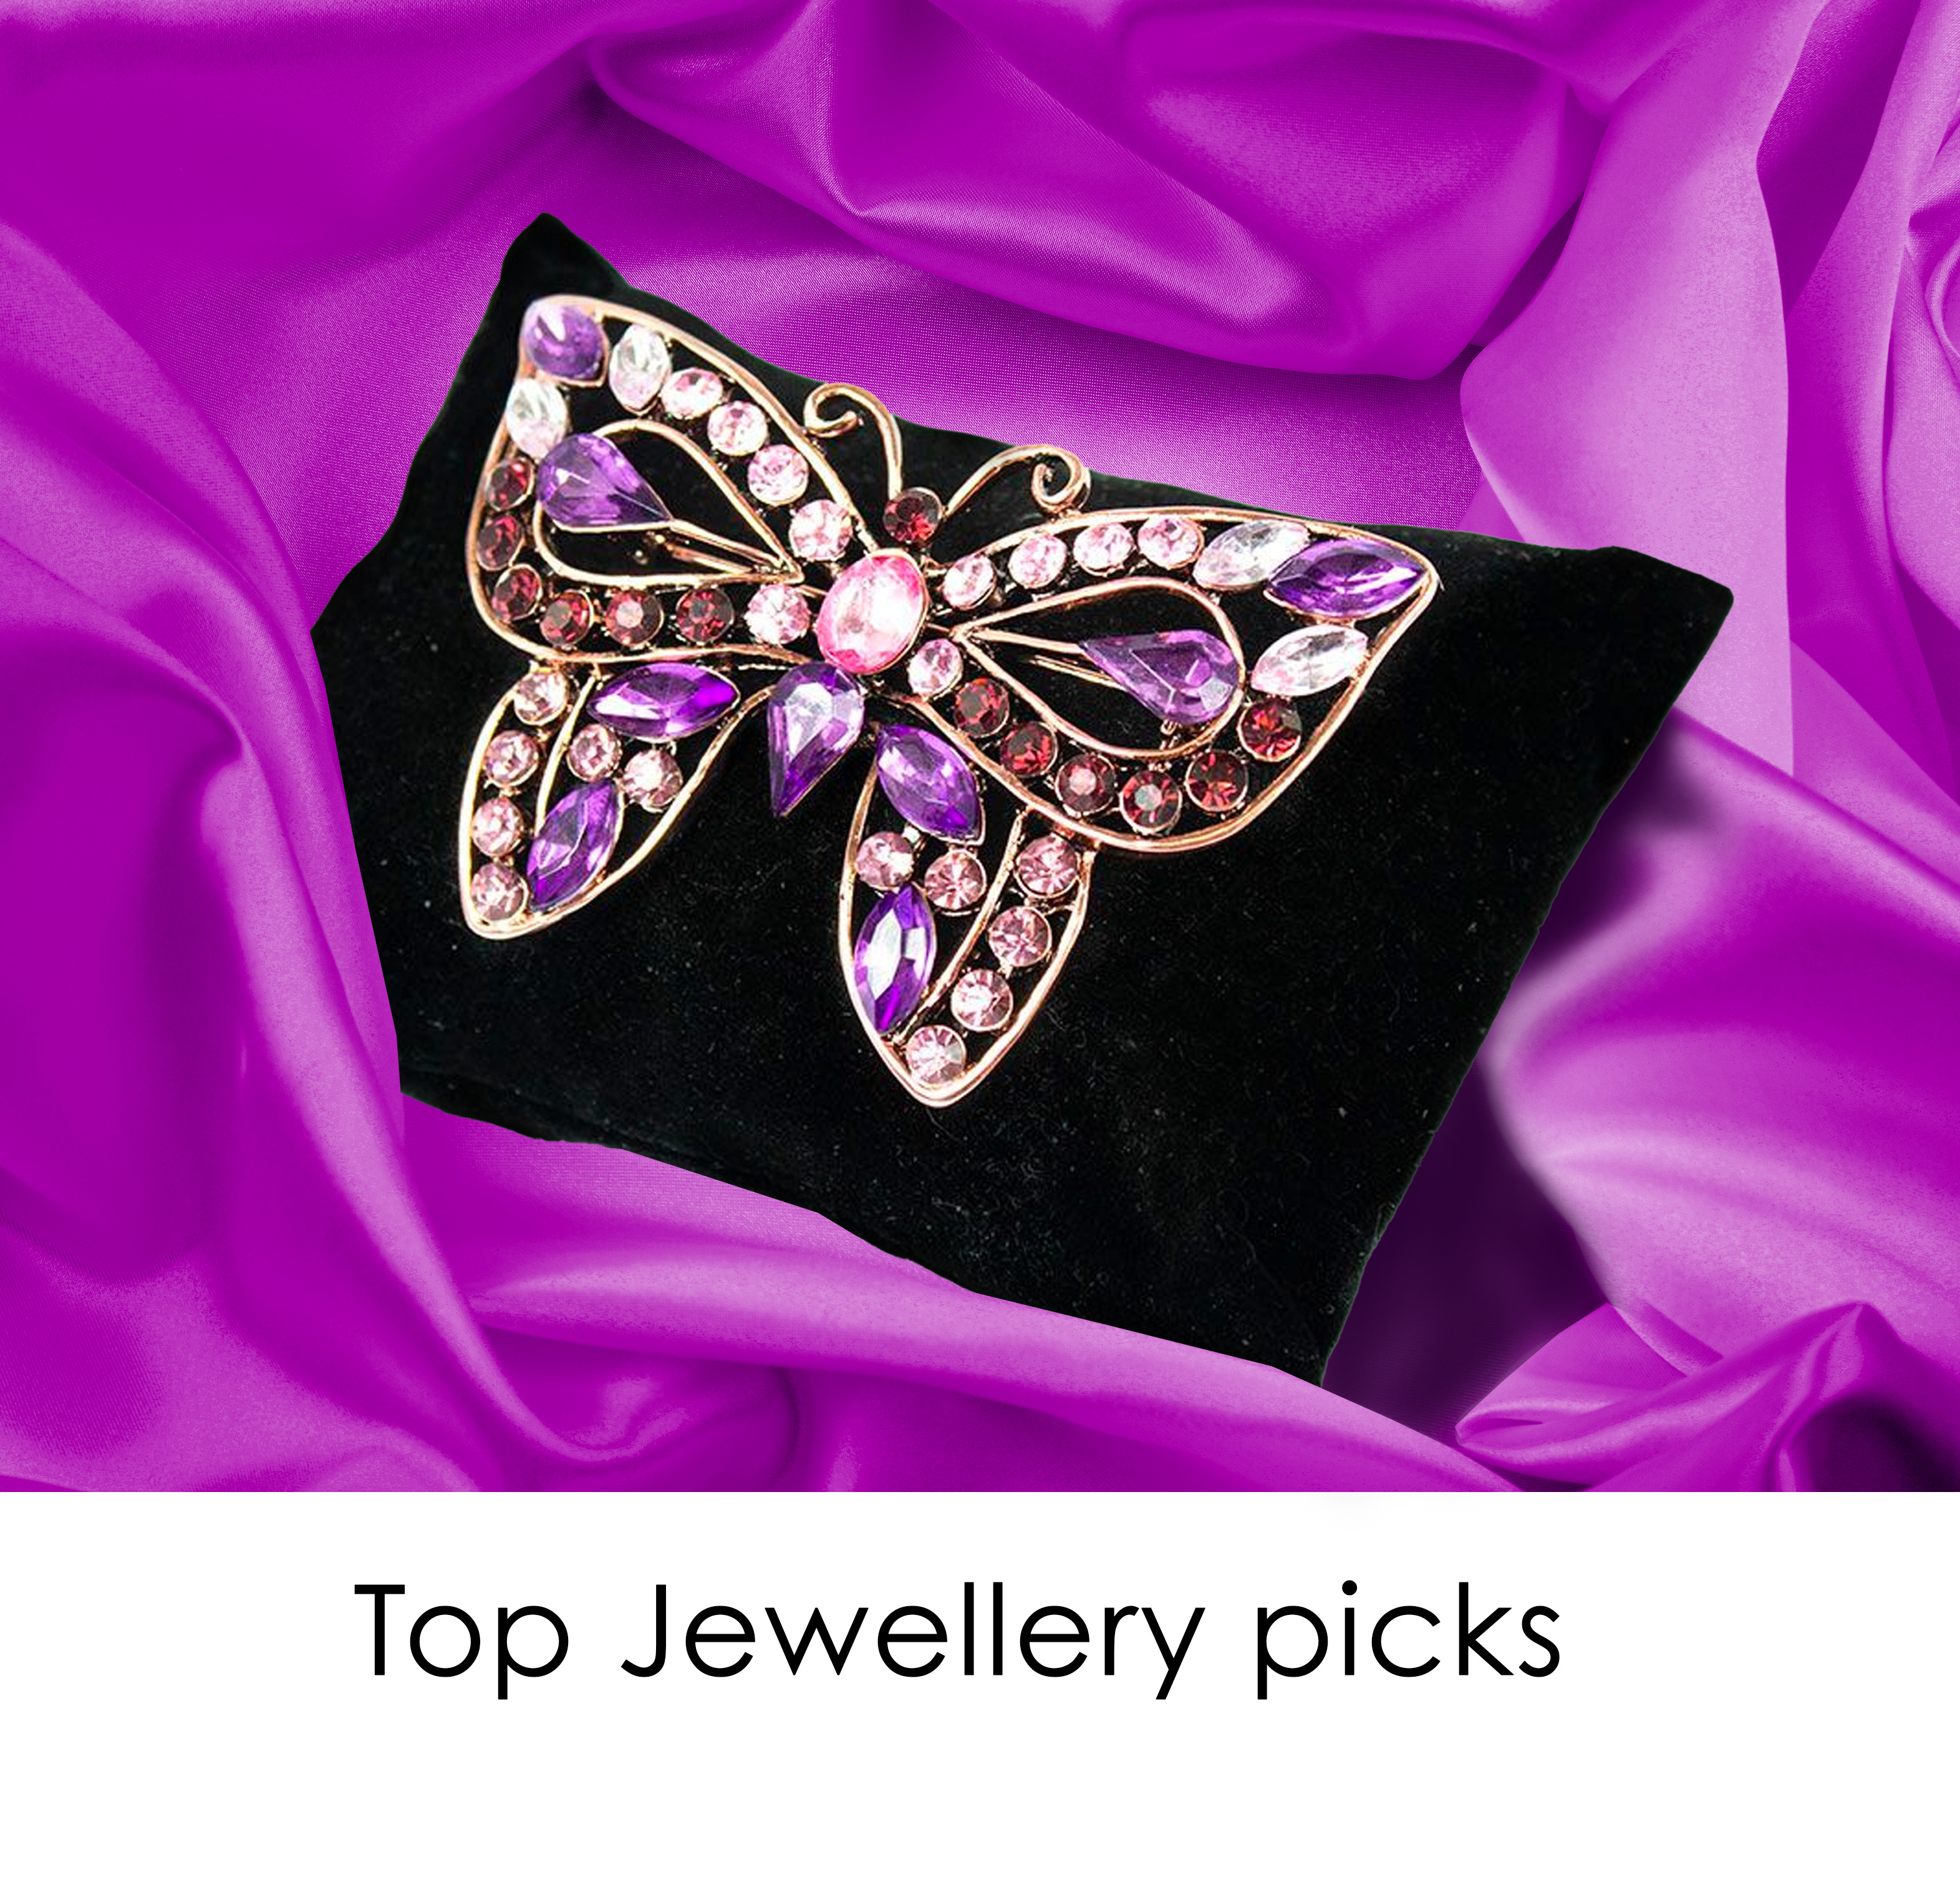 This Week’s Top Jewellery Picks!